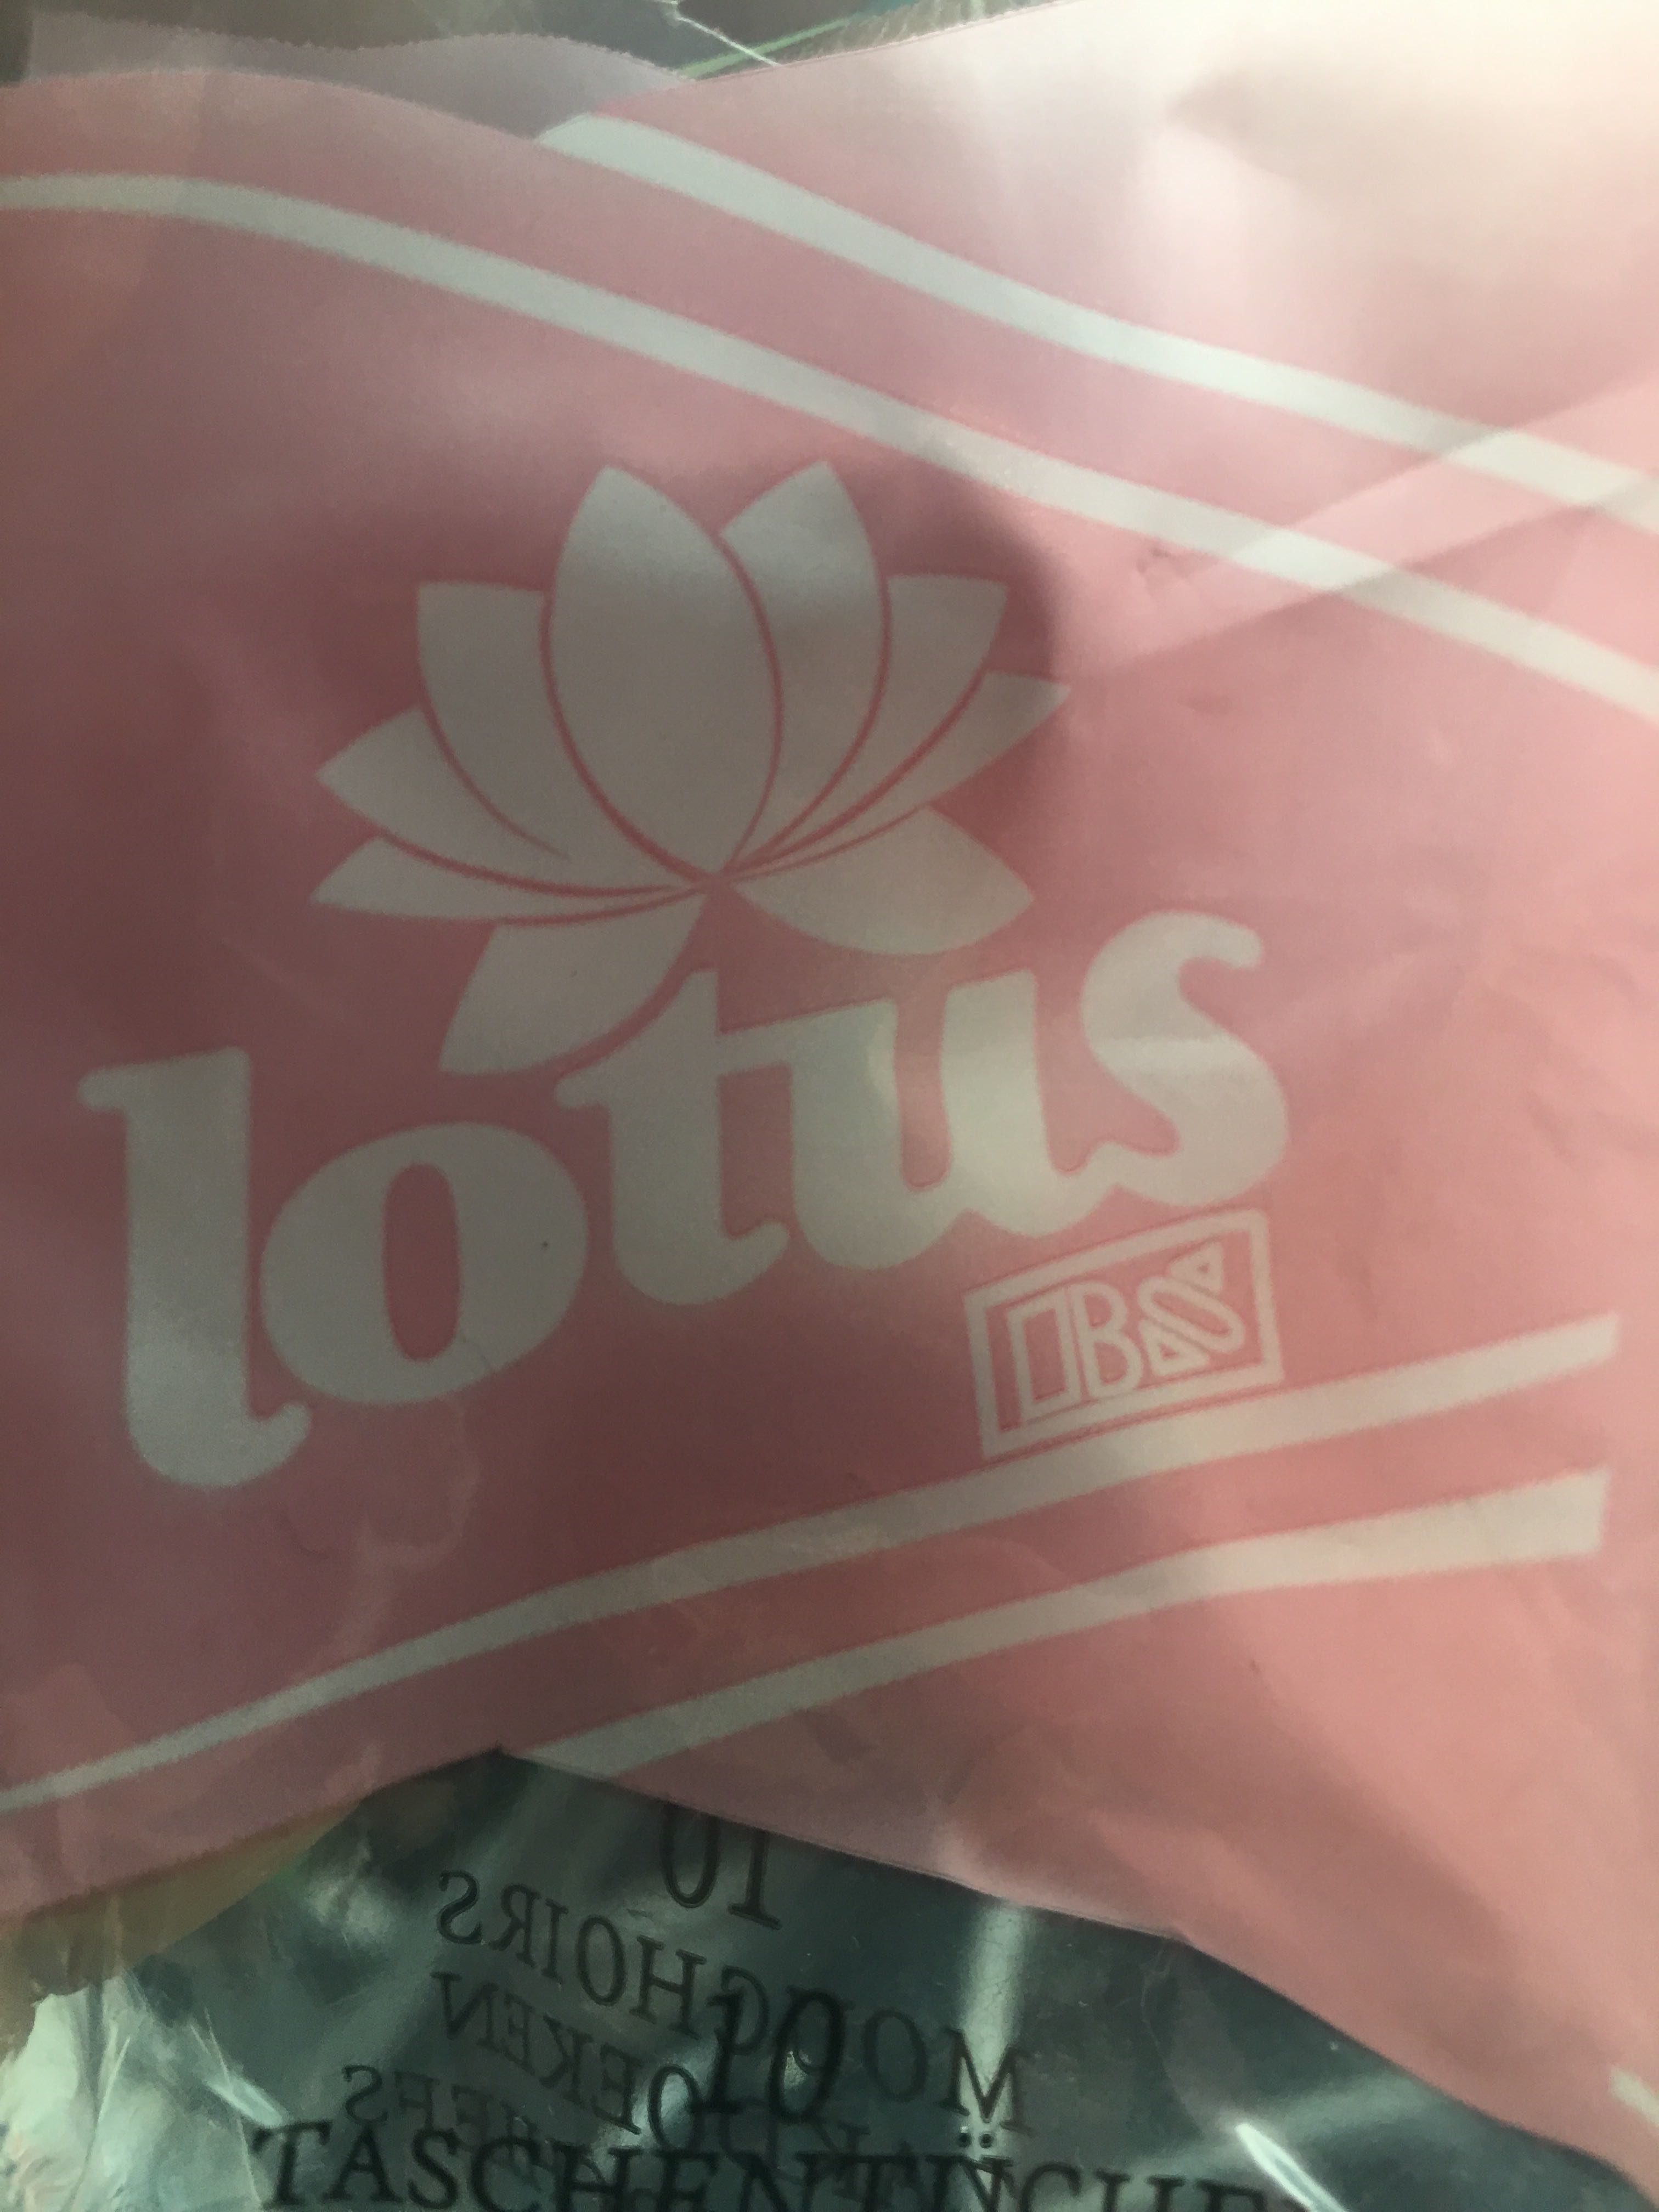 Lotus mouchoir en papier - Produkt - fr